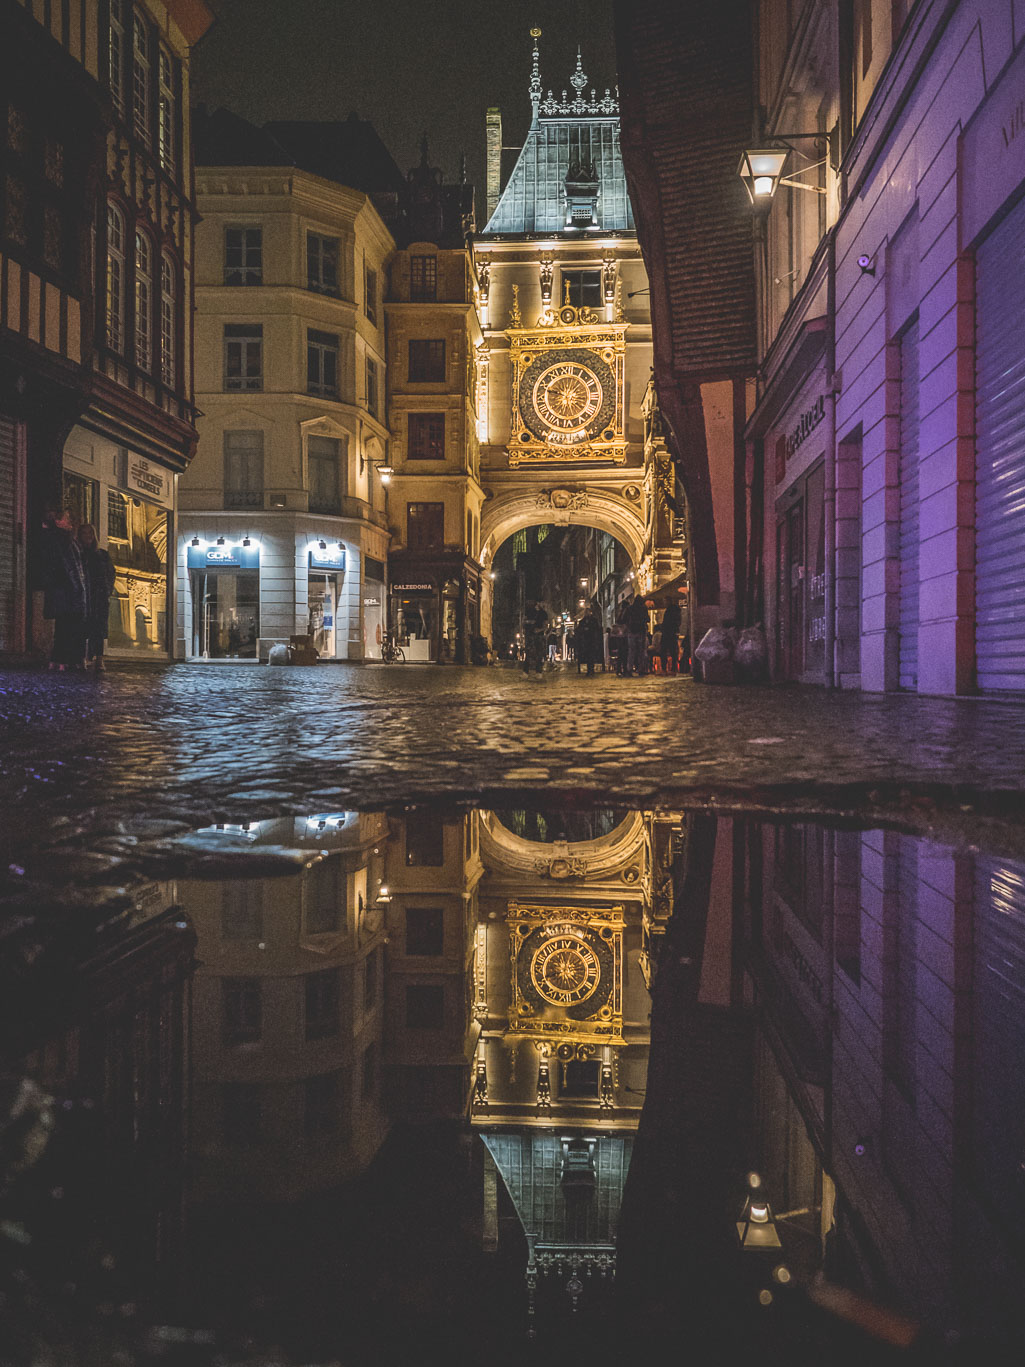 Le Gros Horloge Rouen: Sehenswürdigkeiten und Tipps für deinen Besuch in der Hauptstadt der Normandie